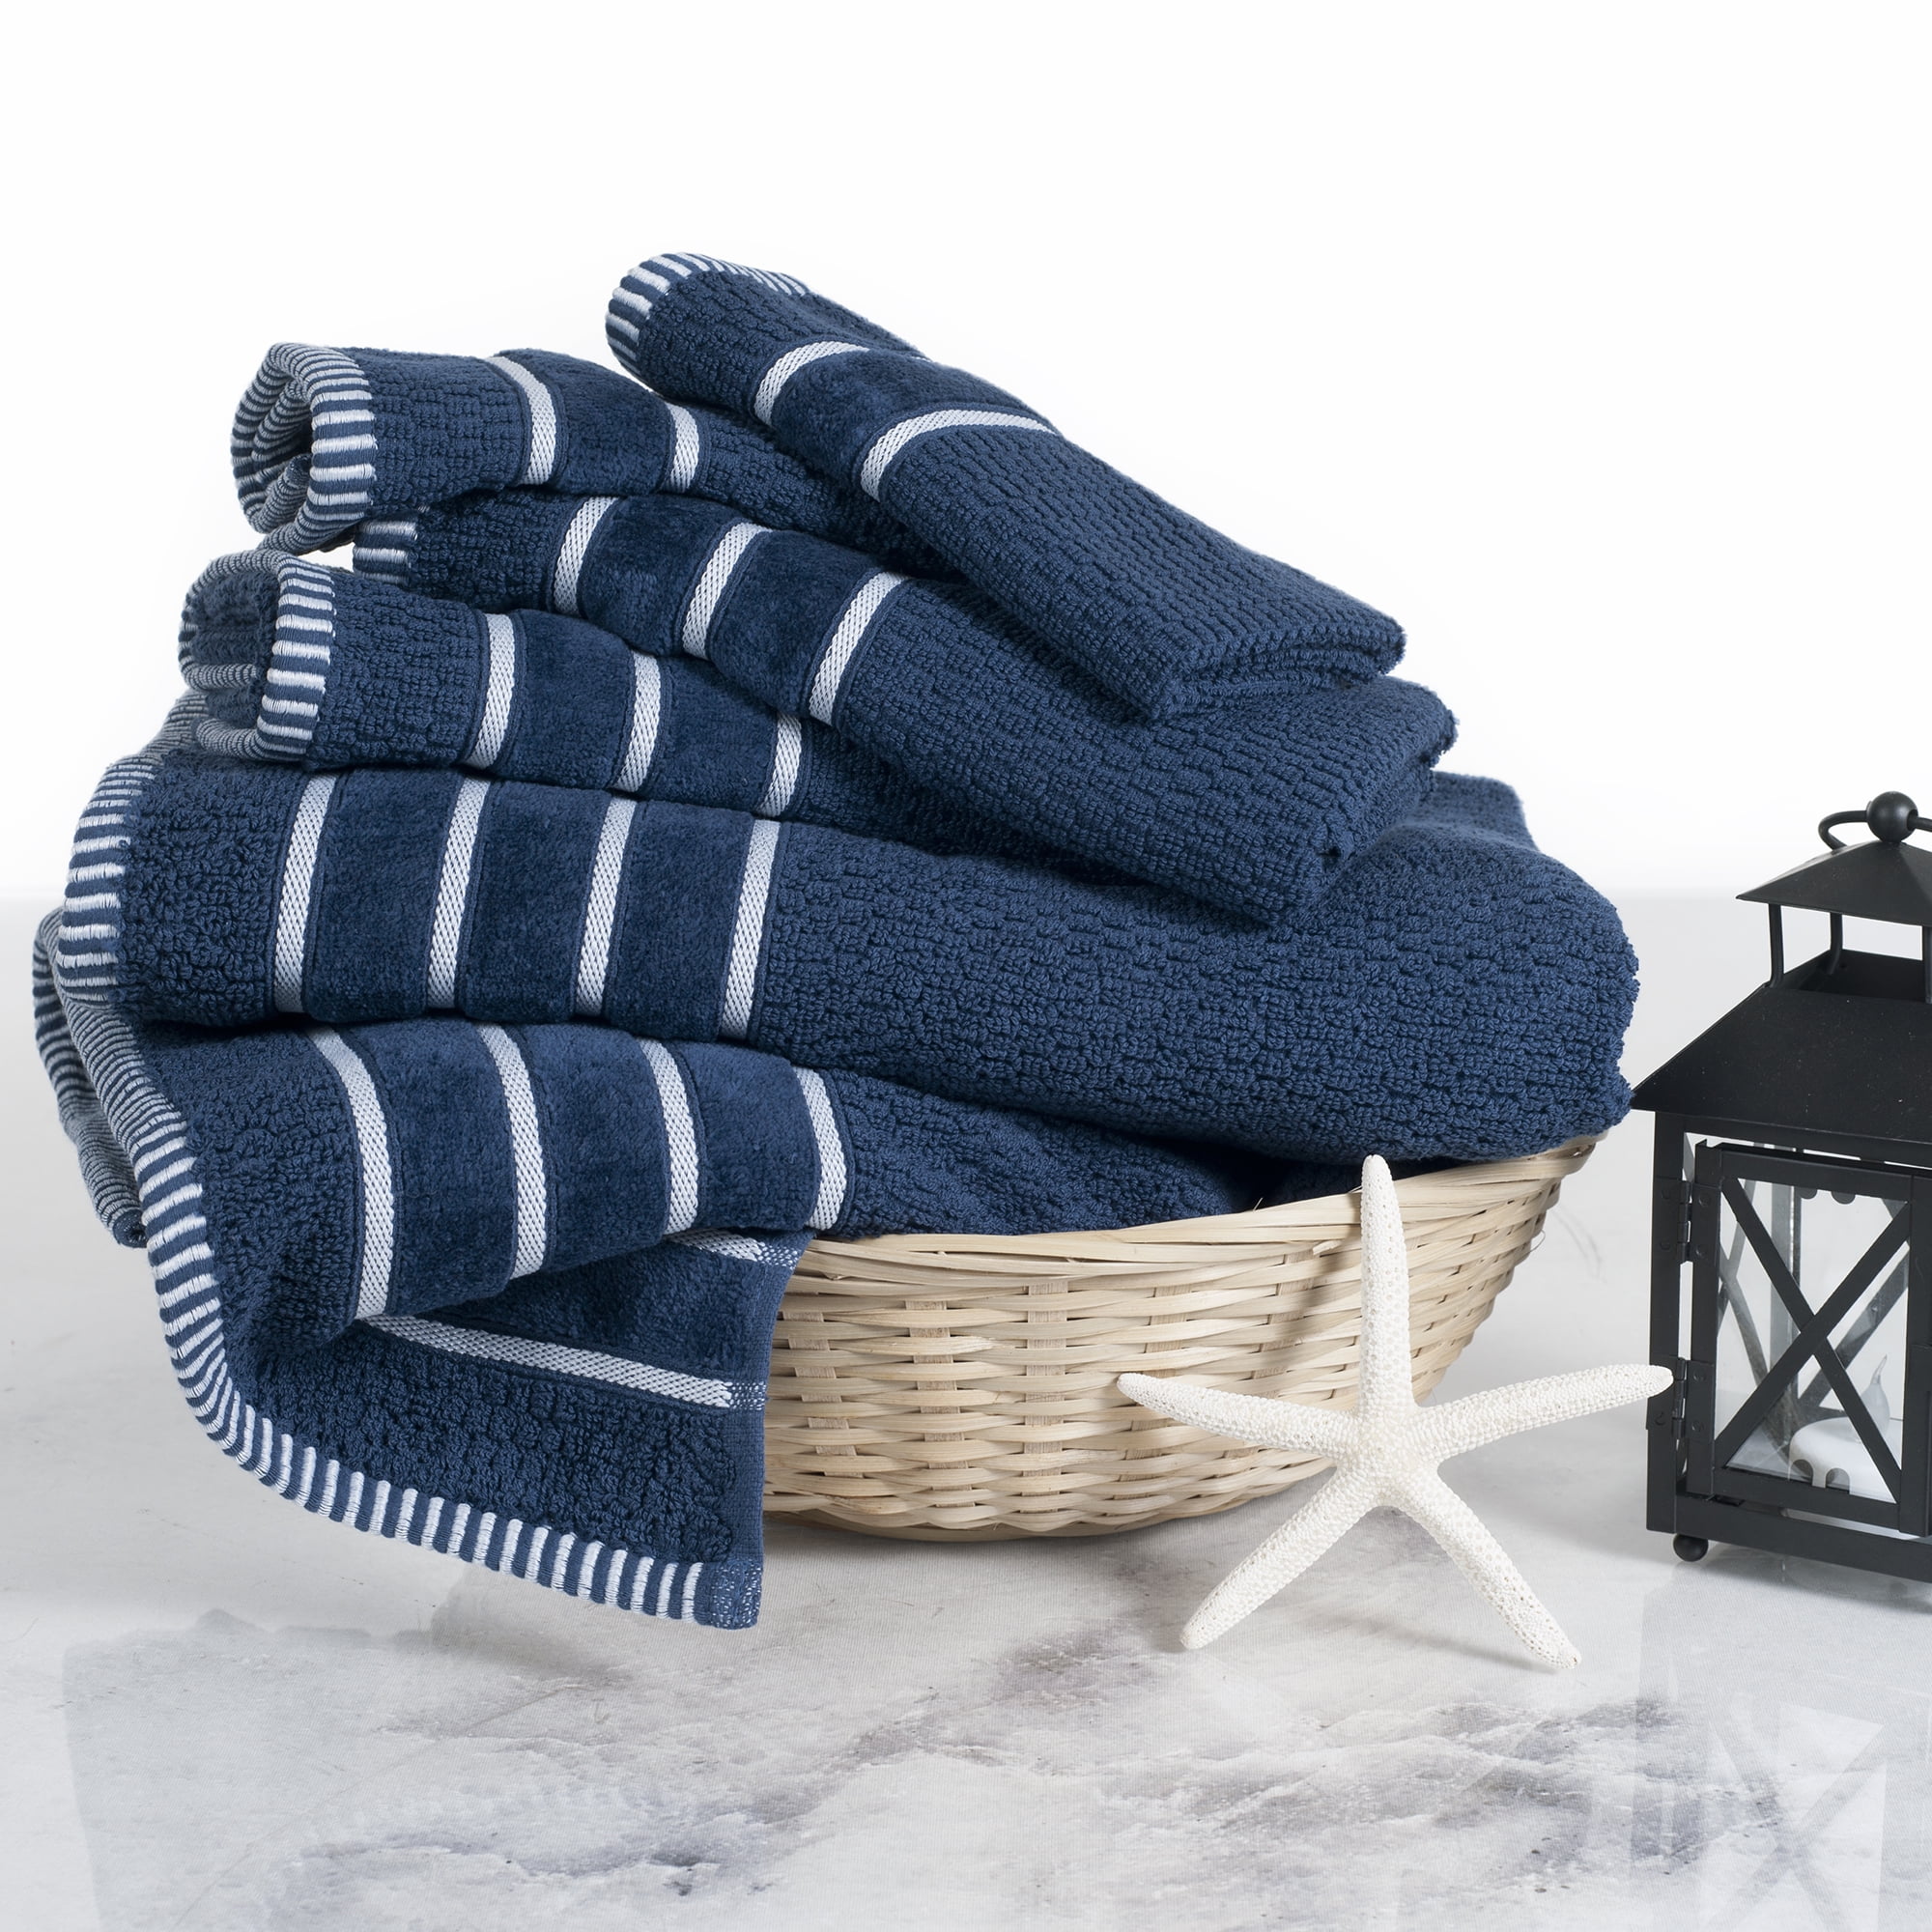 Lavish Home 100% Cotton Rice Weave 6 Piece Towel Set - Seafoam